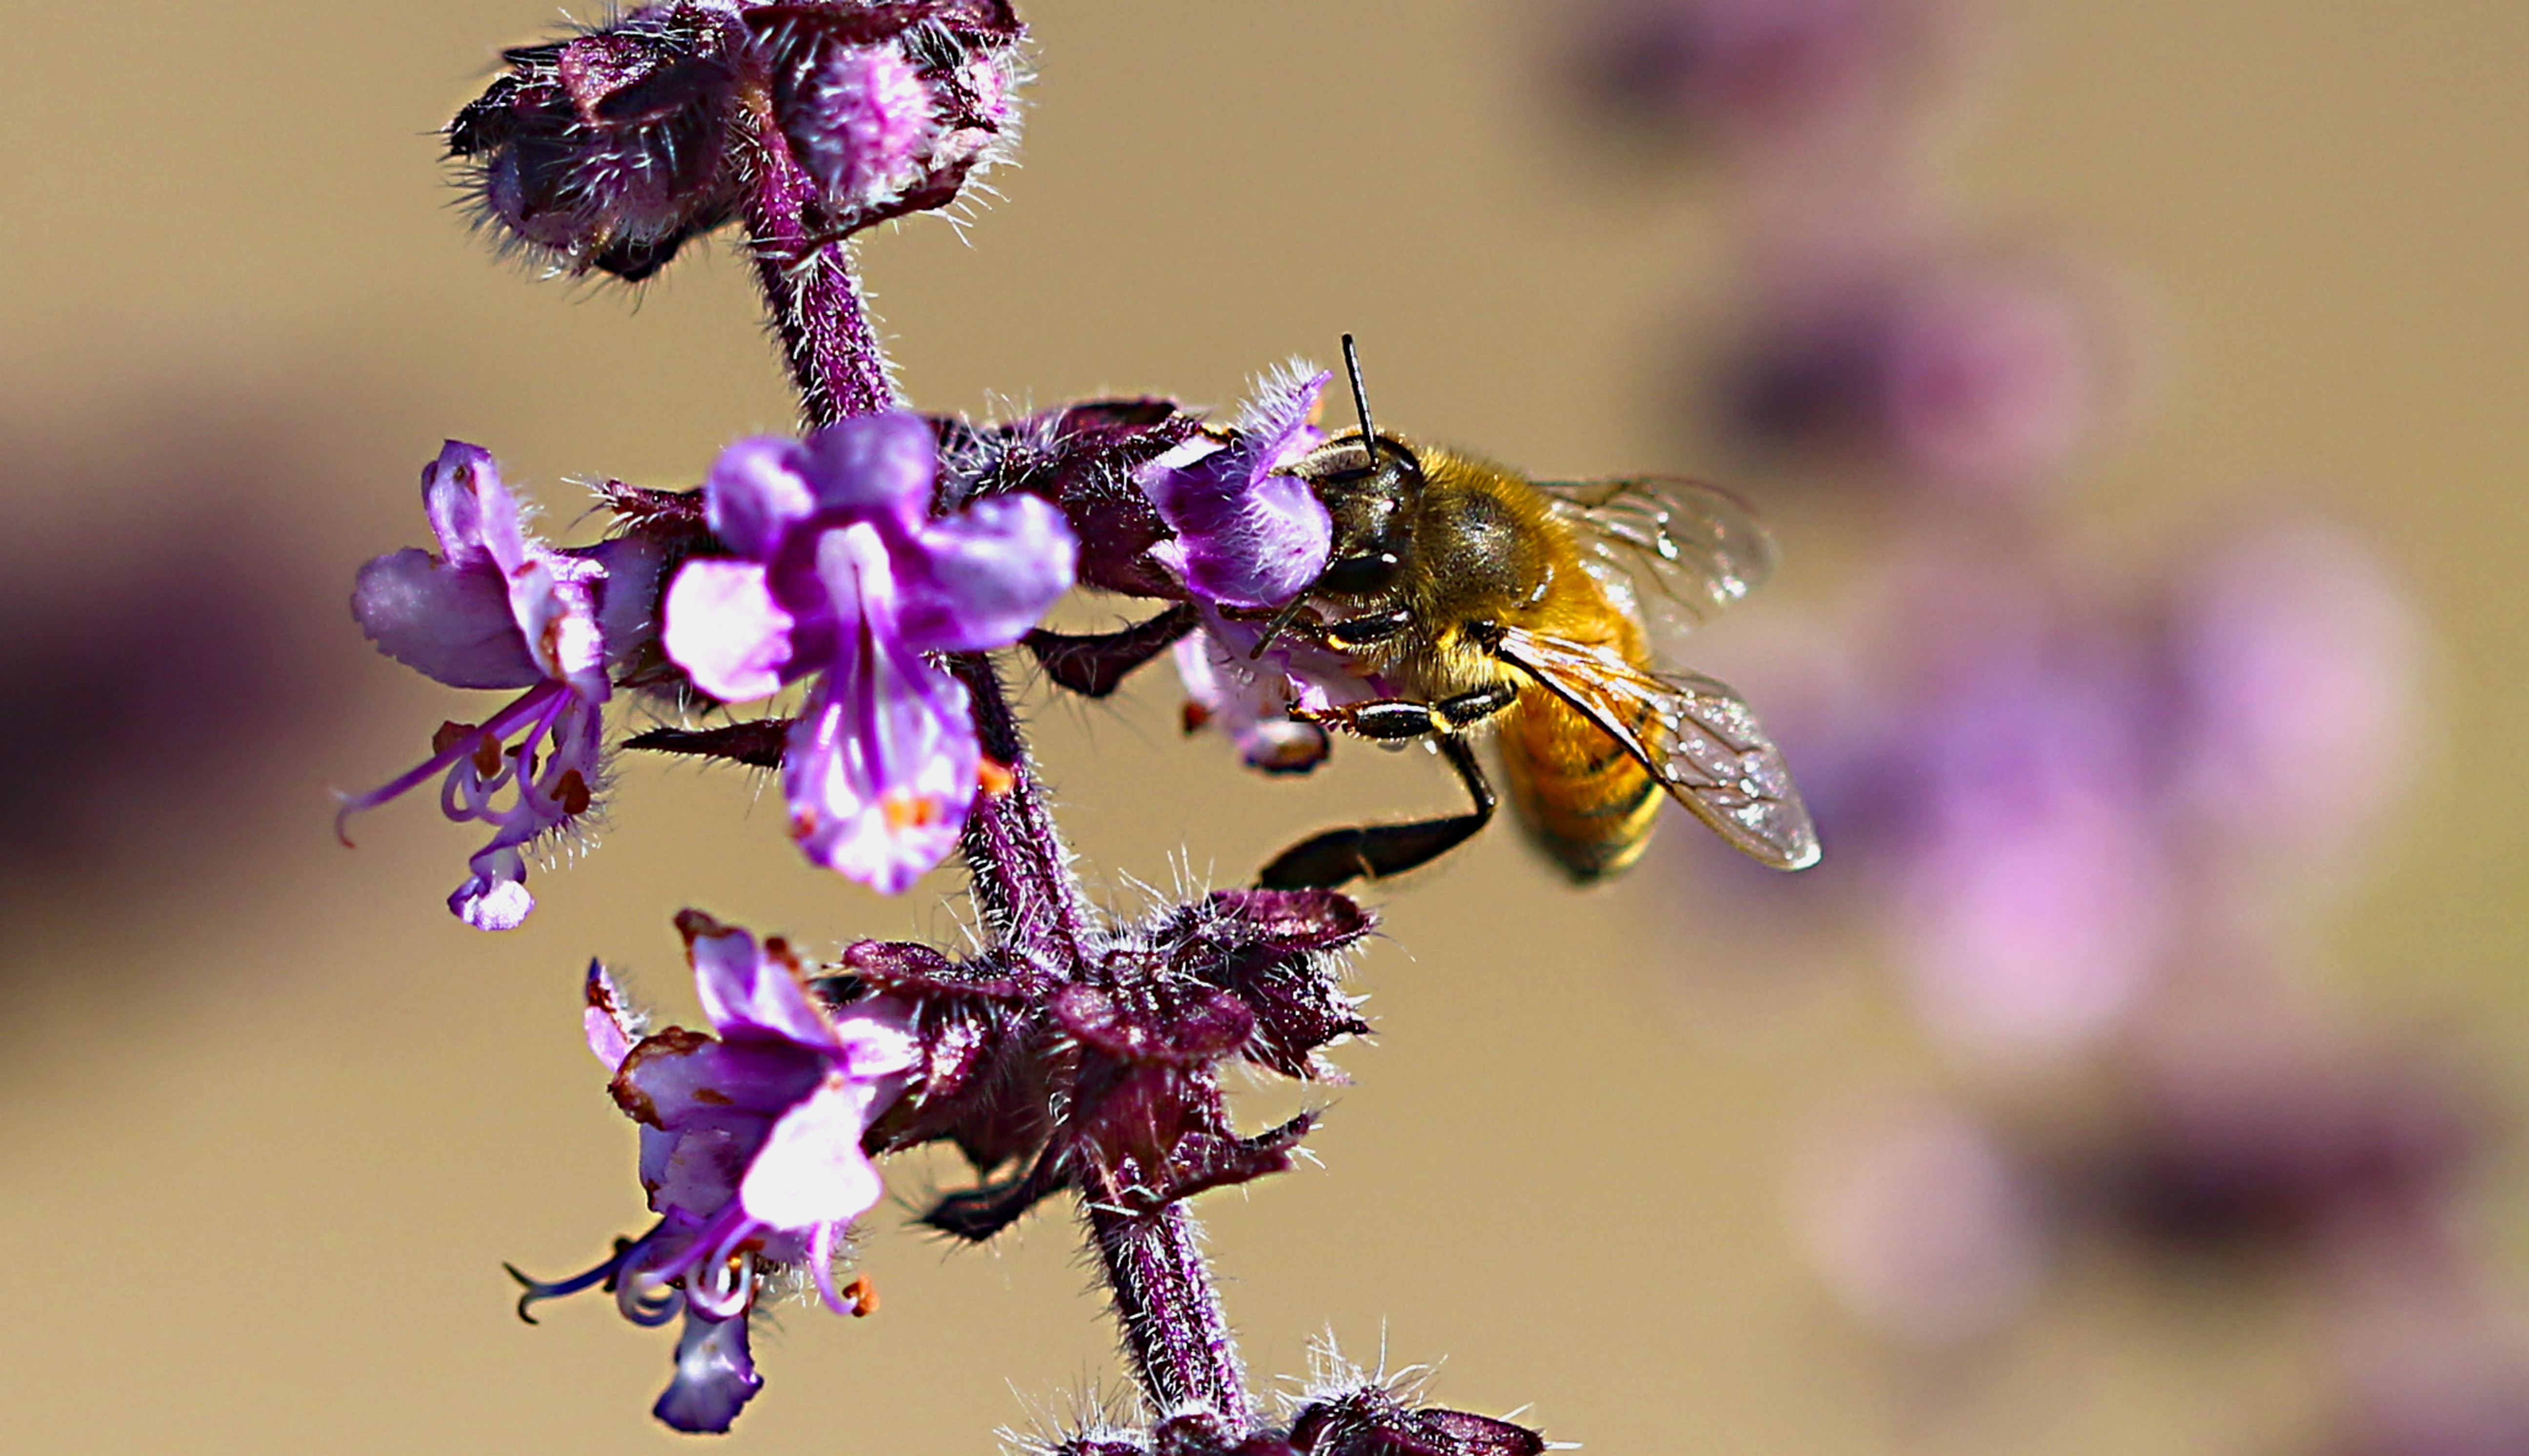 Macro, Flower, Pollen, Beauty, Bee, purple, insect